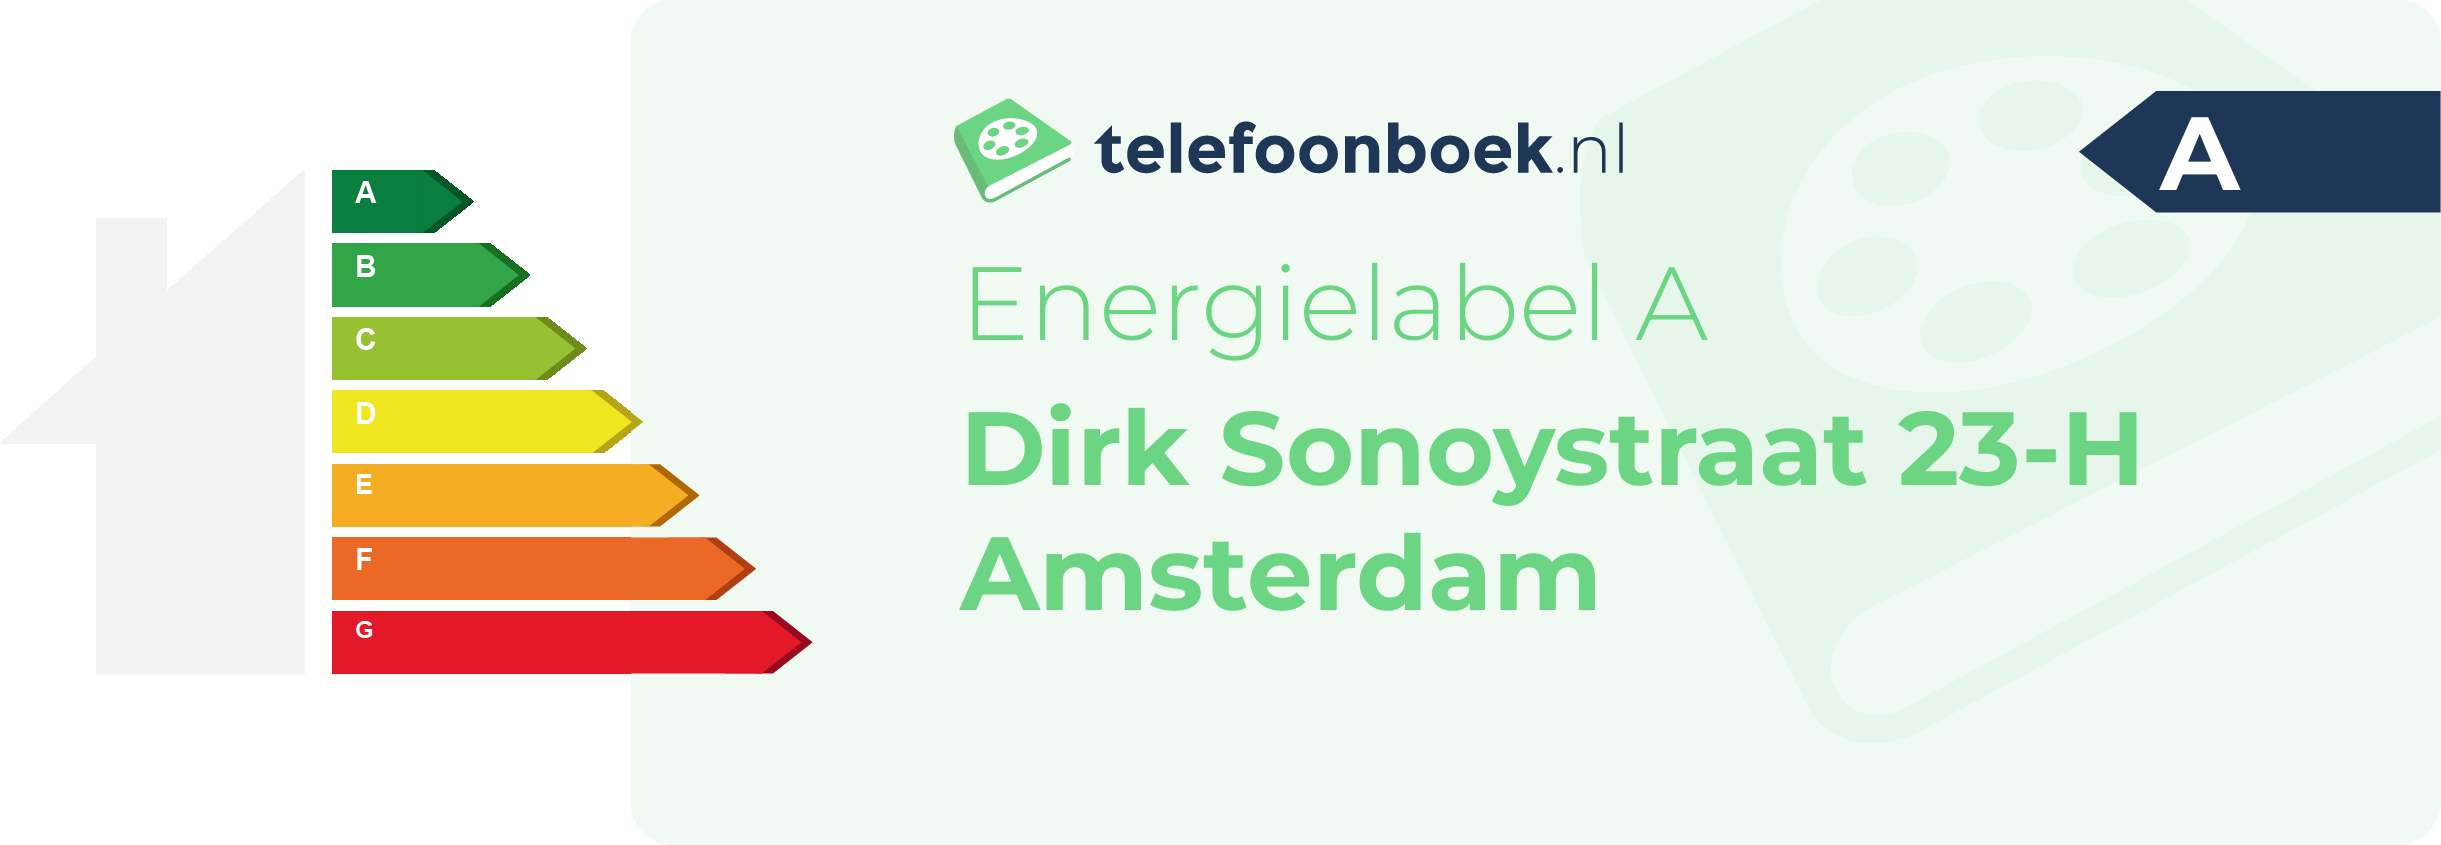 Energielabel Dirk Sonoystraat 23-H Amsterdam